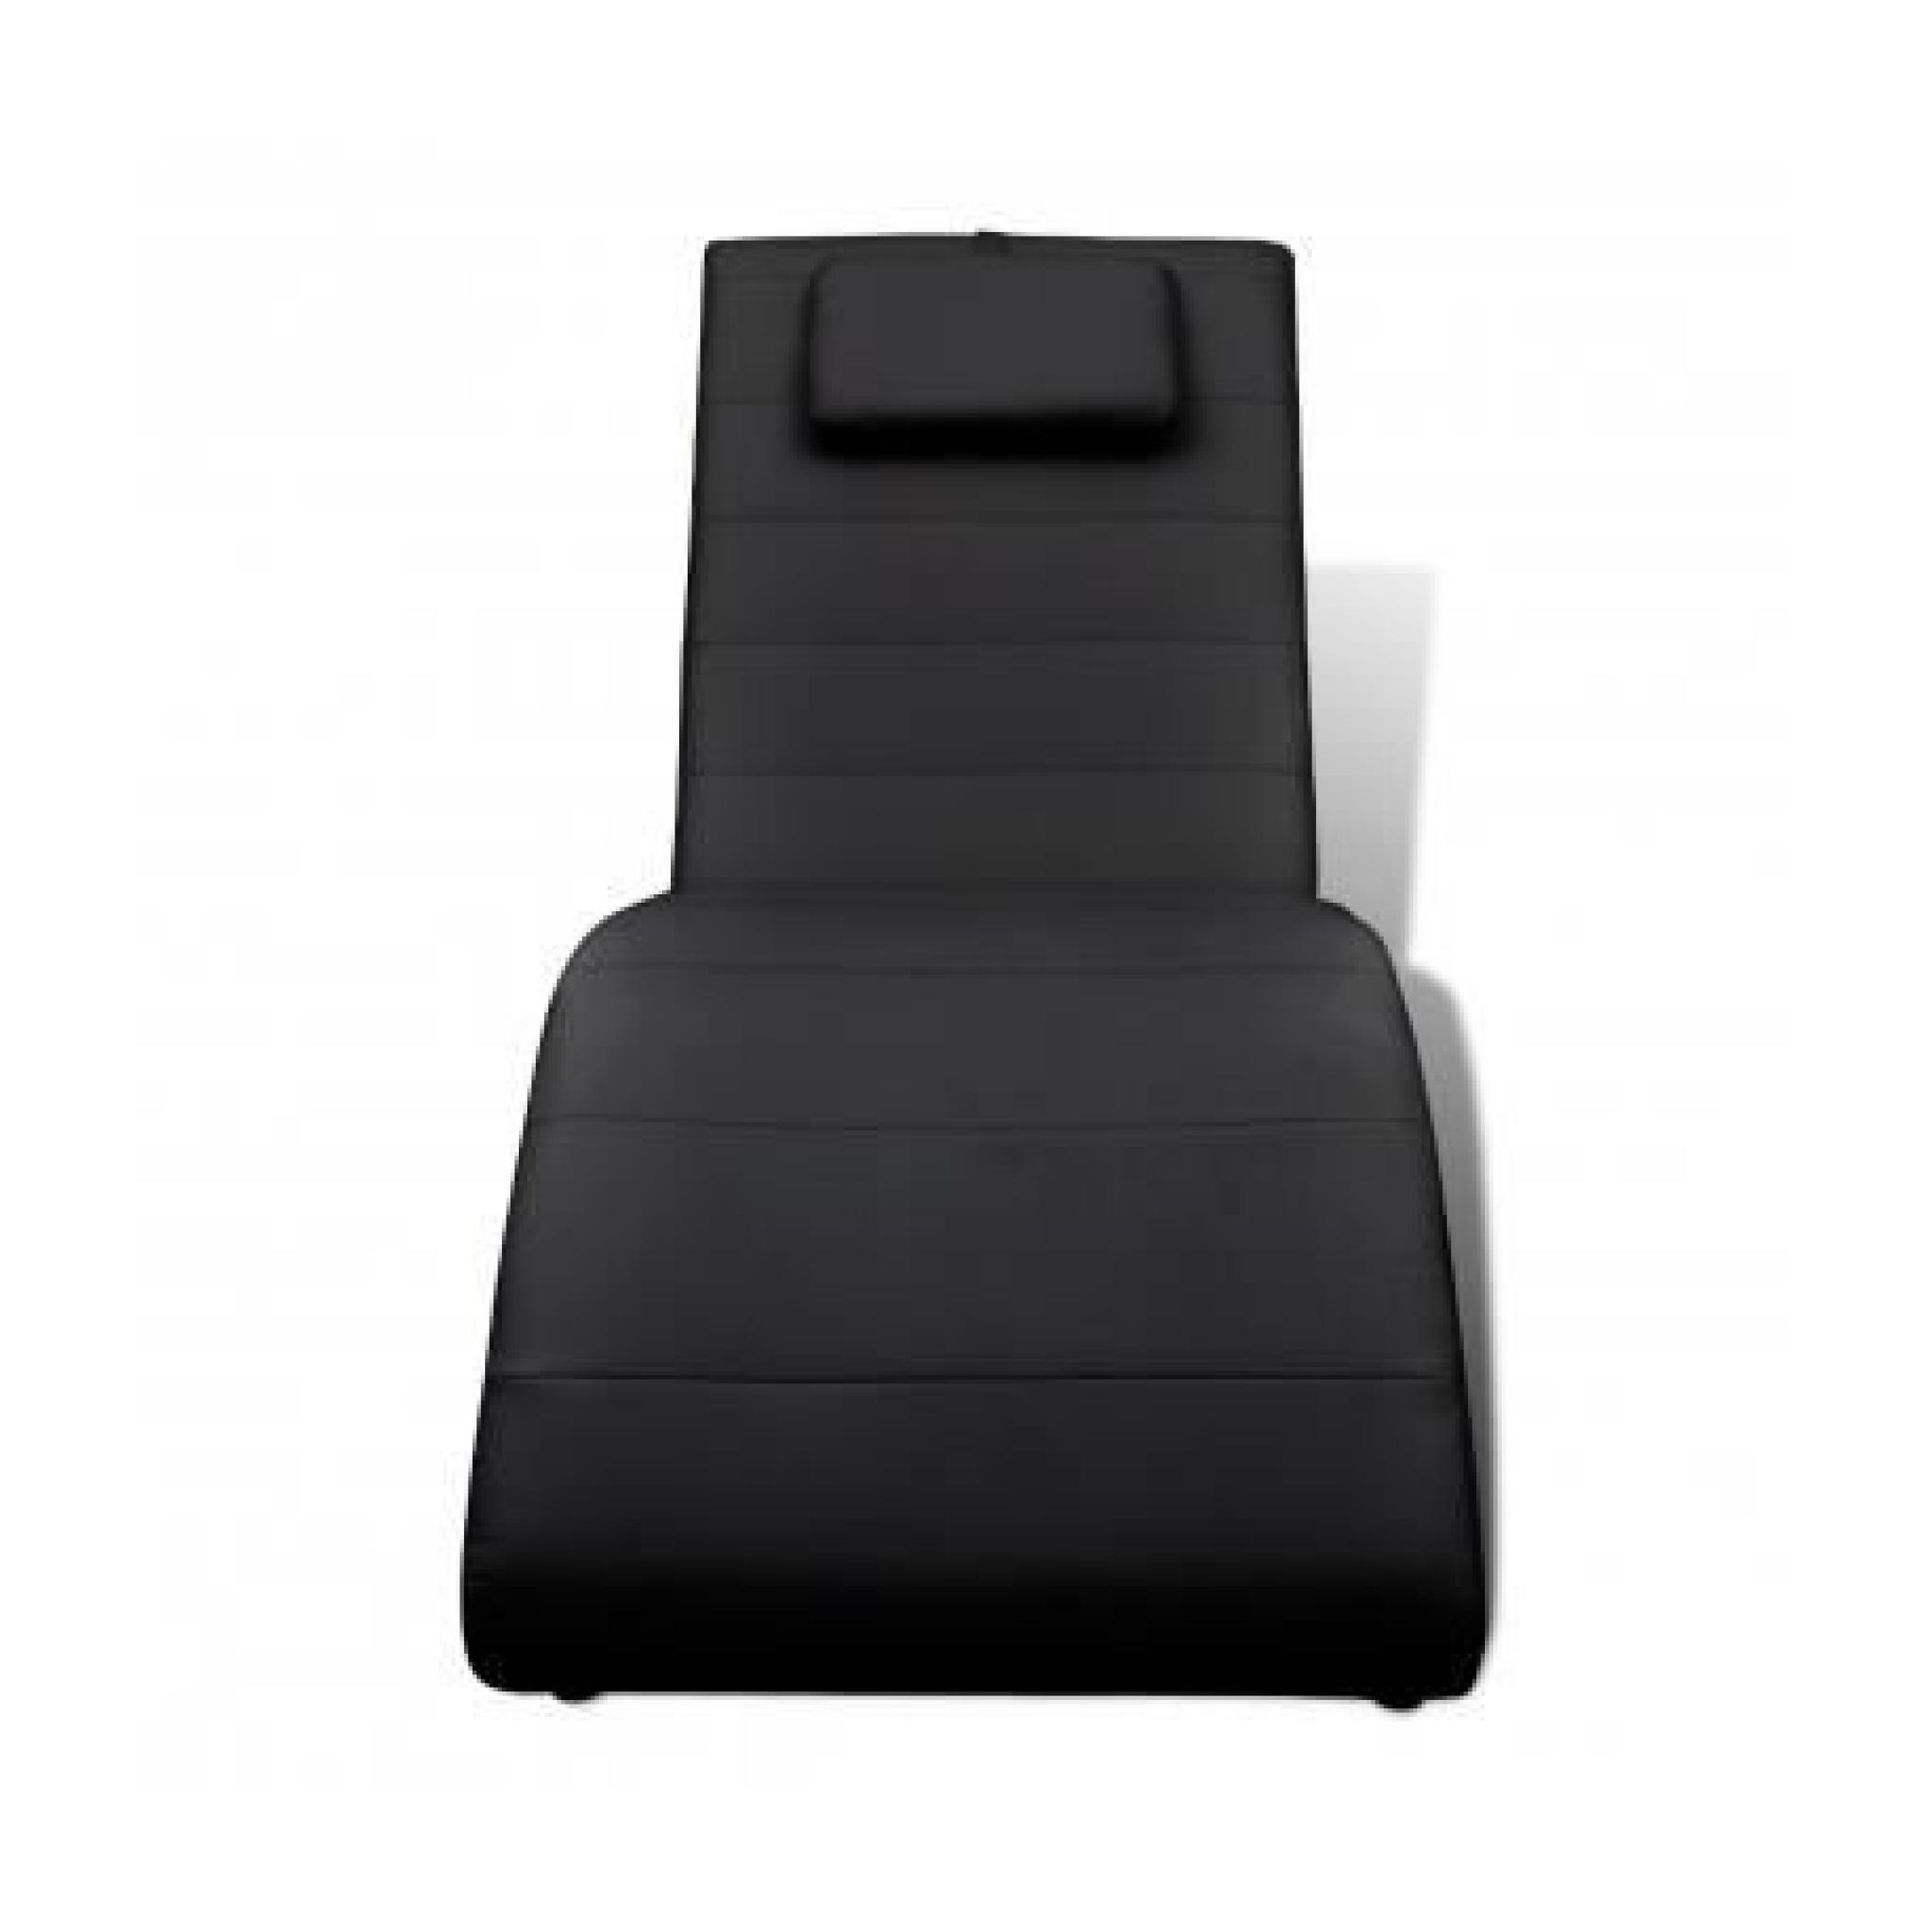 Chaise longue noire avec 2 pieds et appui-tête pas cher